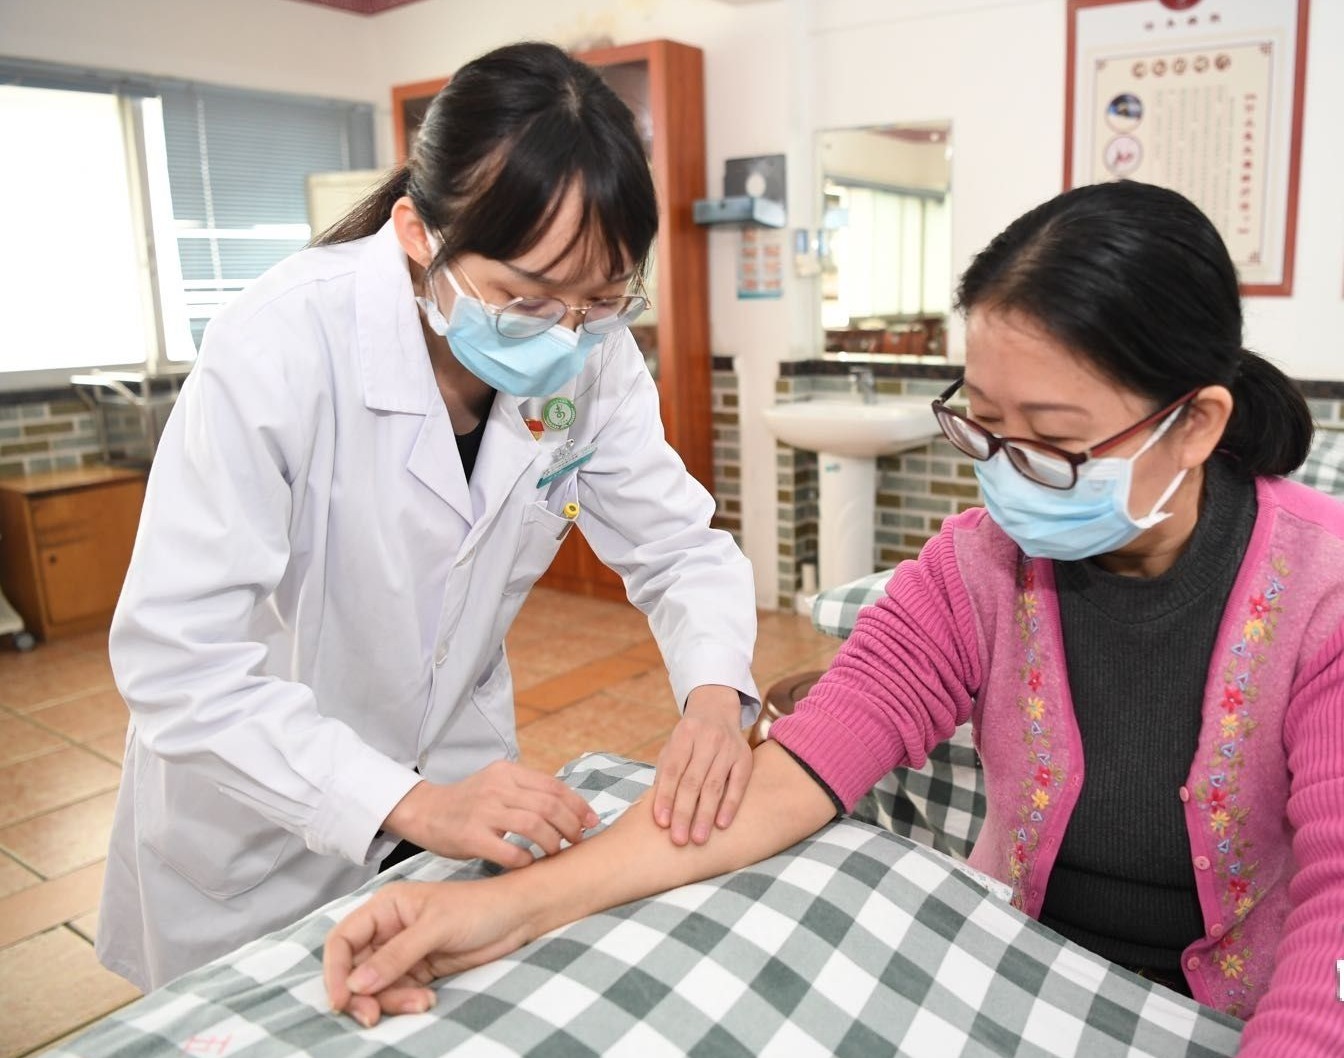 江门市五邑中医院中医师正在为病人使用浮针疗法。南方日报记者 杨兴乐 摄